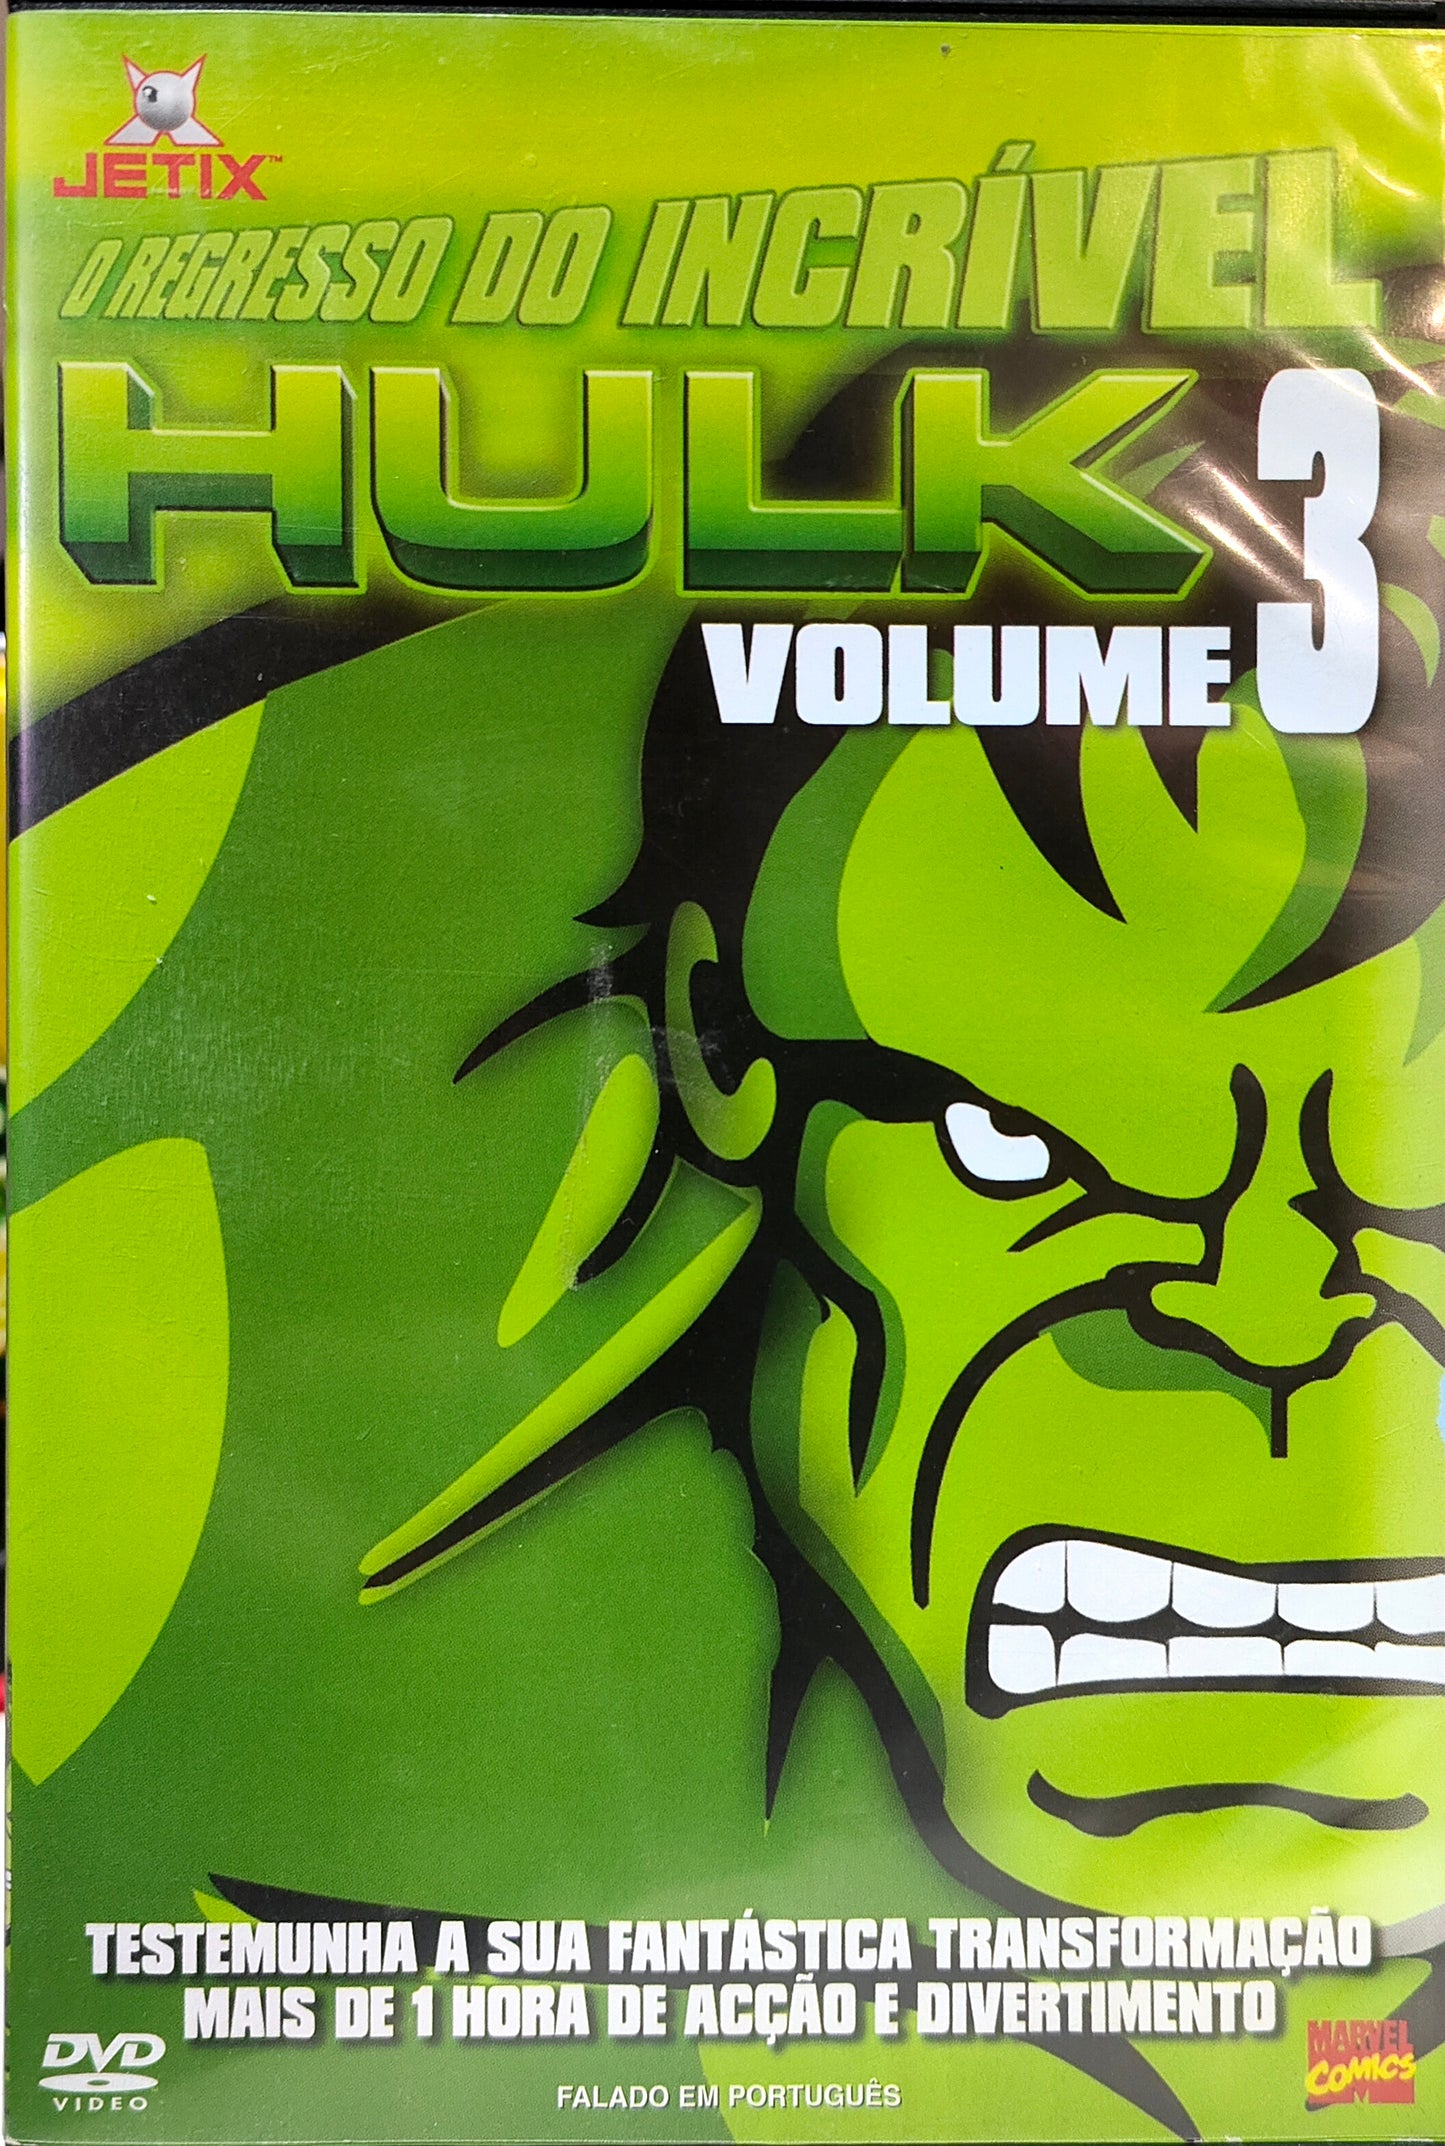 DVD Hulk Vel 3 – Verwendung